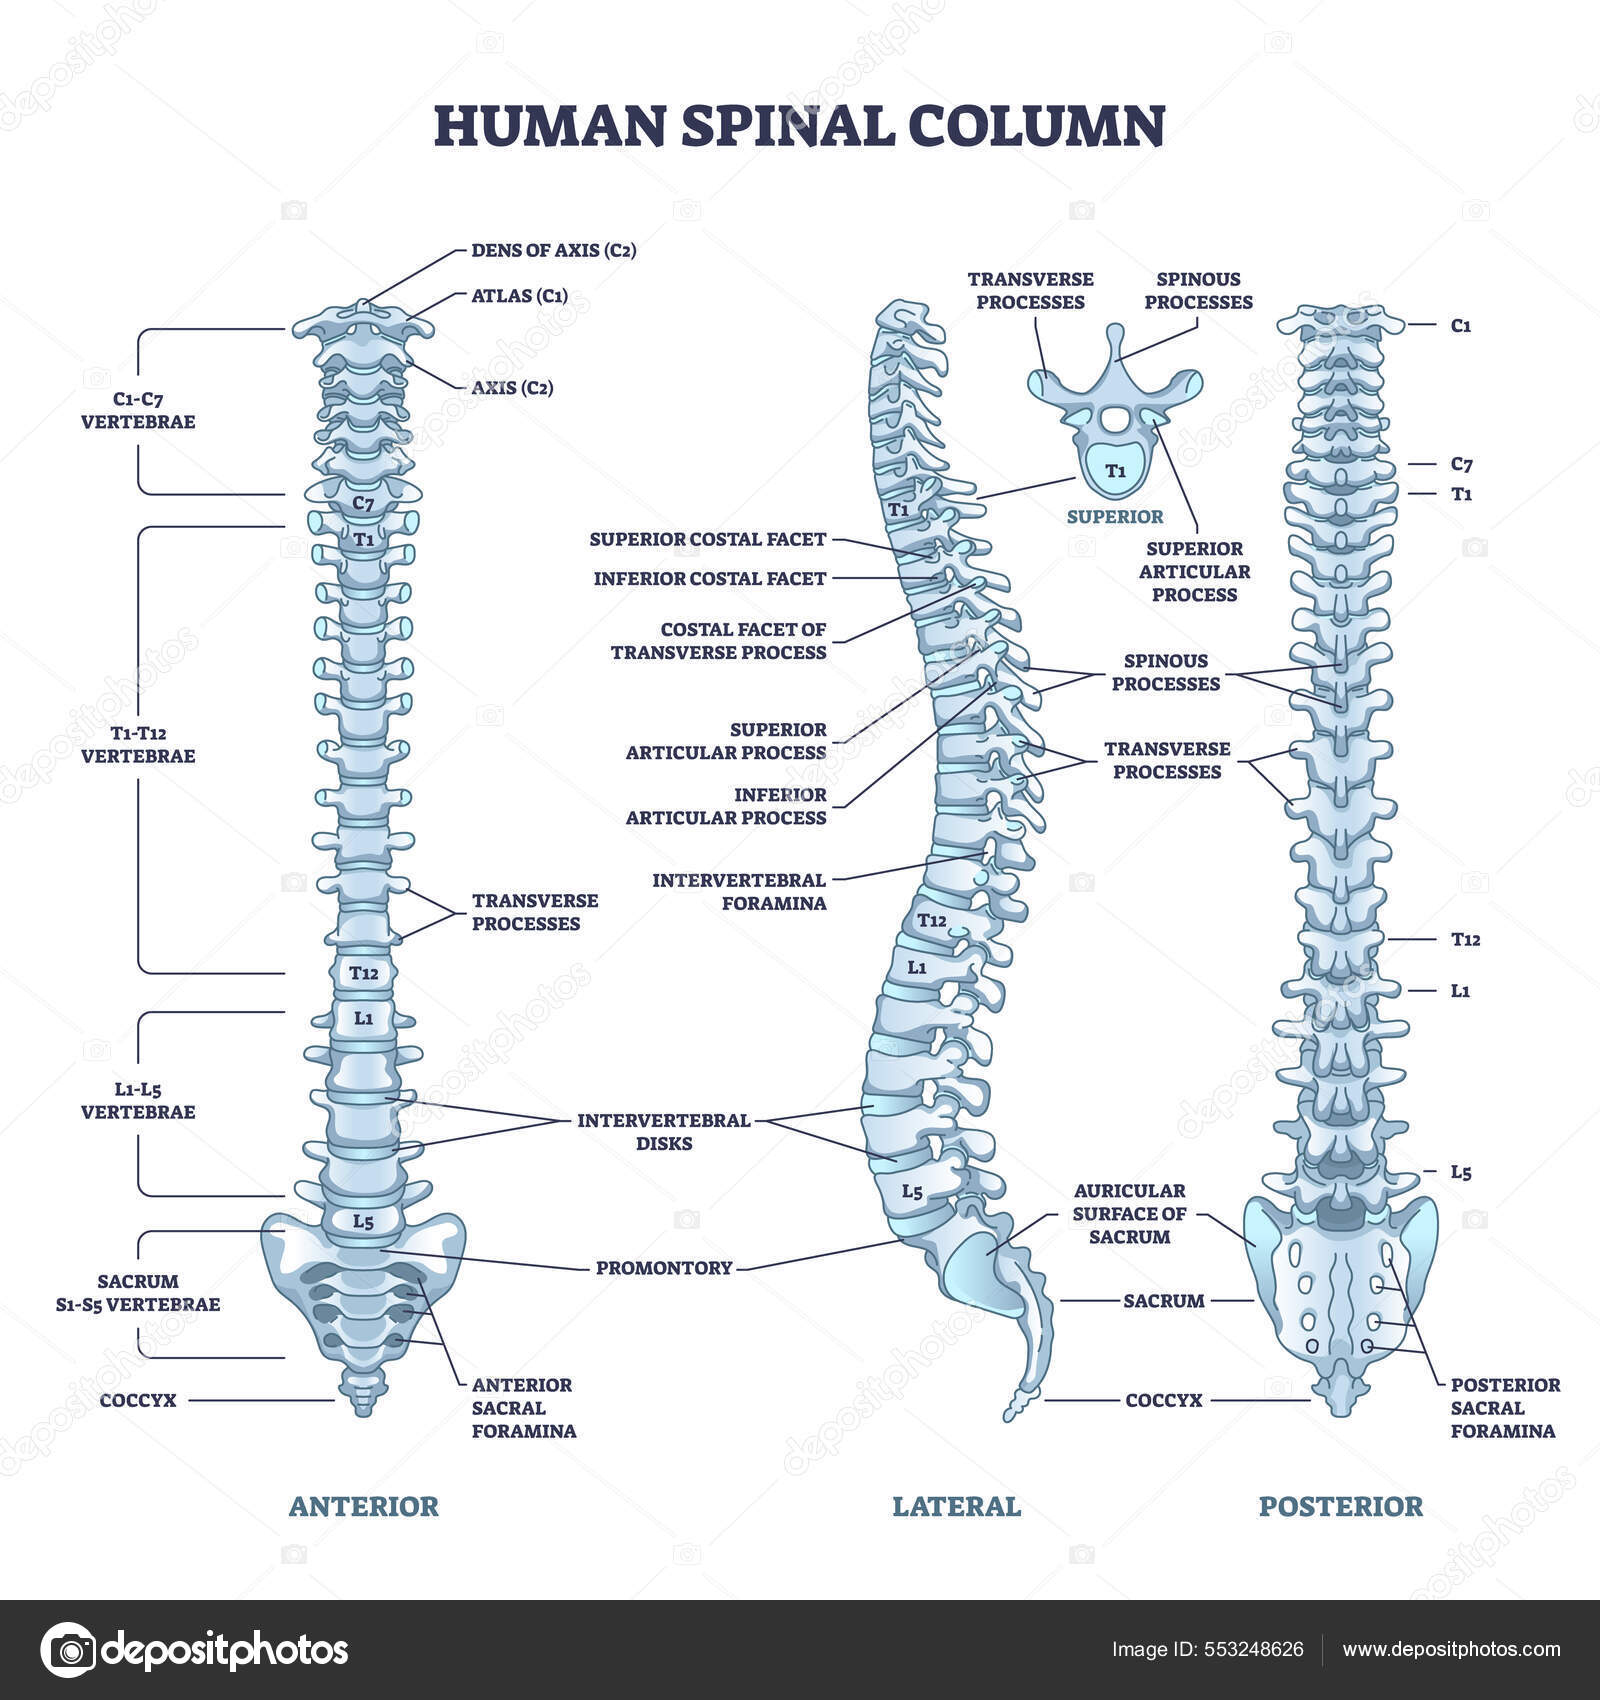 感謝価格】 TheSpine脊椎・脊髄外科 原著5版 健康/医学 - cavedu.com